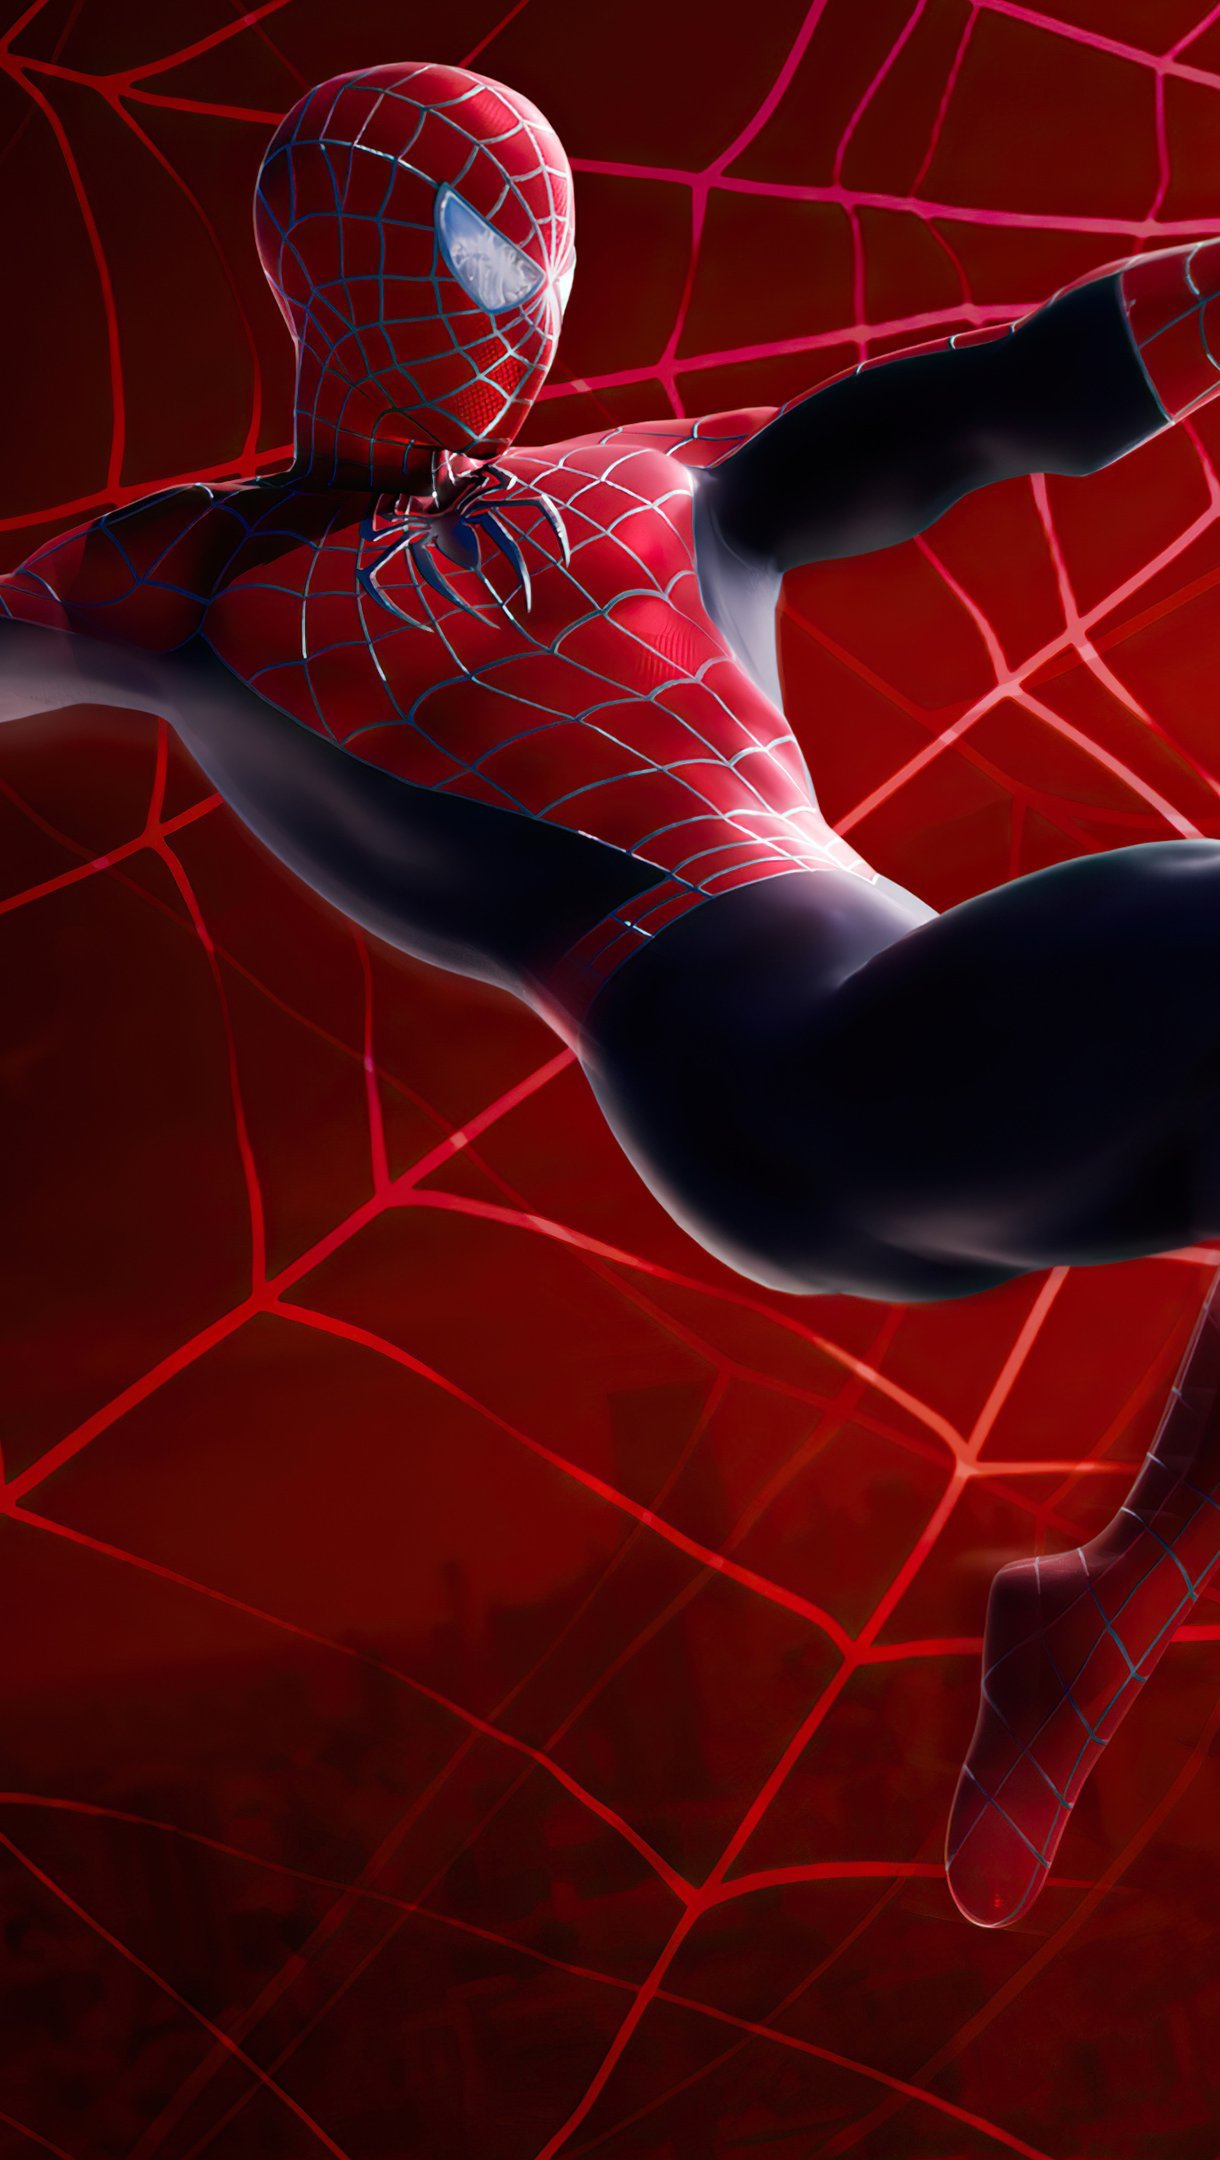 SpiderMan Web Shoot Marvel 4K tải xuống hình nền